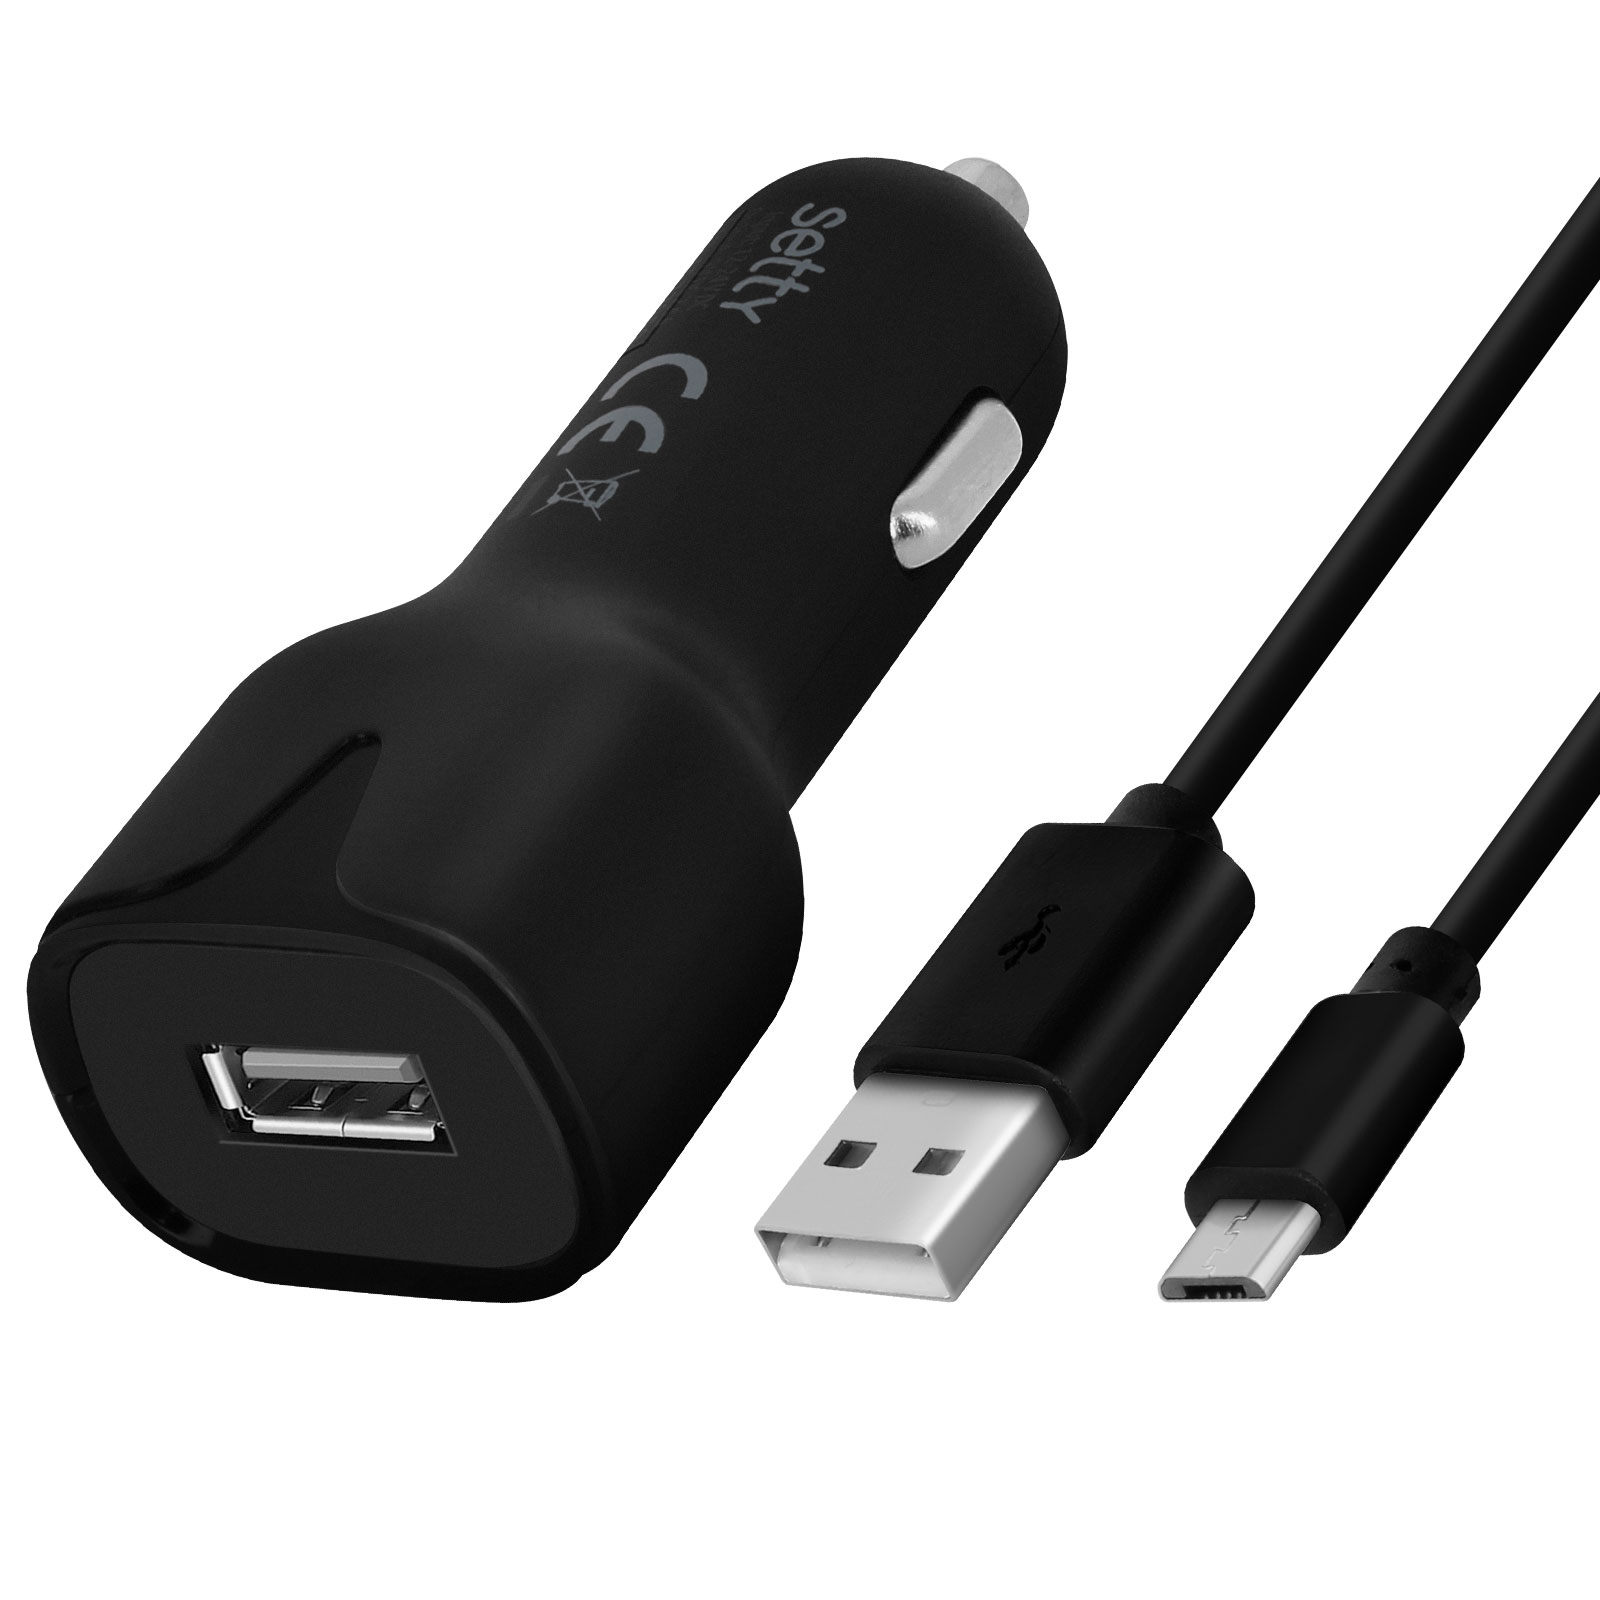 Caricatore Accendisigari USB 2.4A + Cavo Micro-USB 1m, Setty